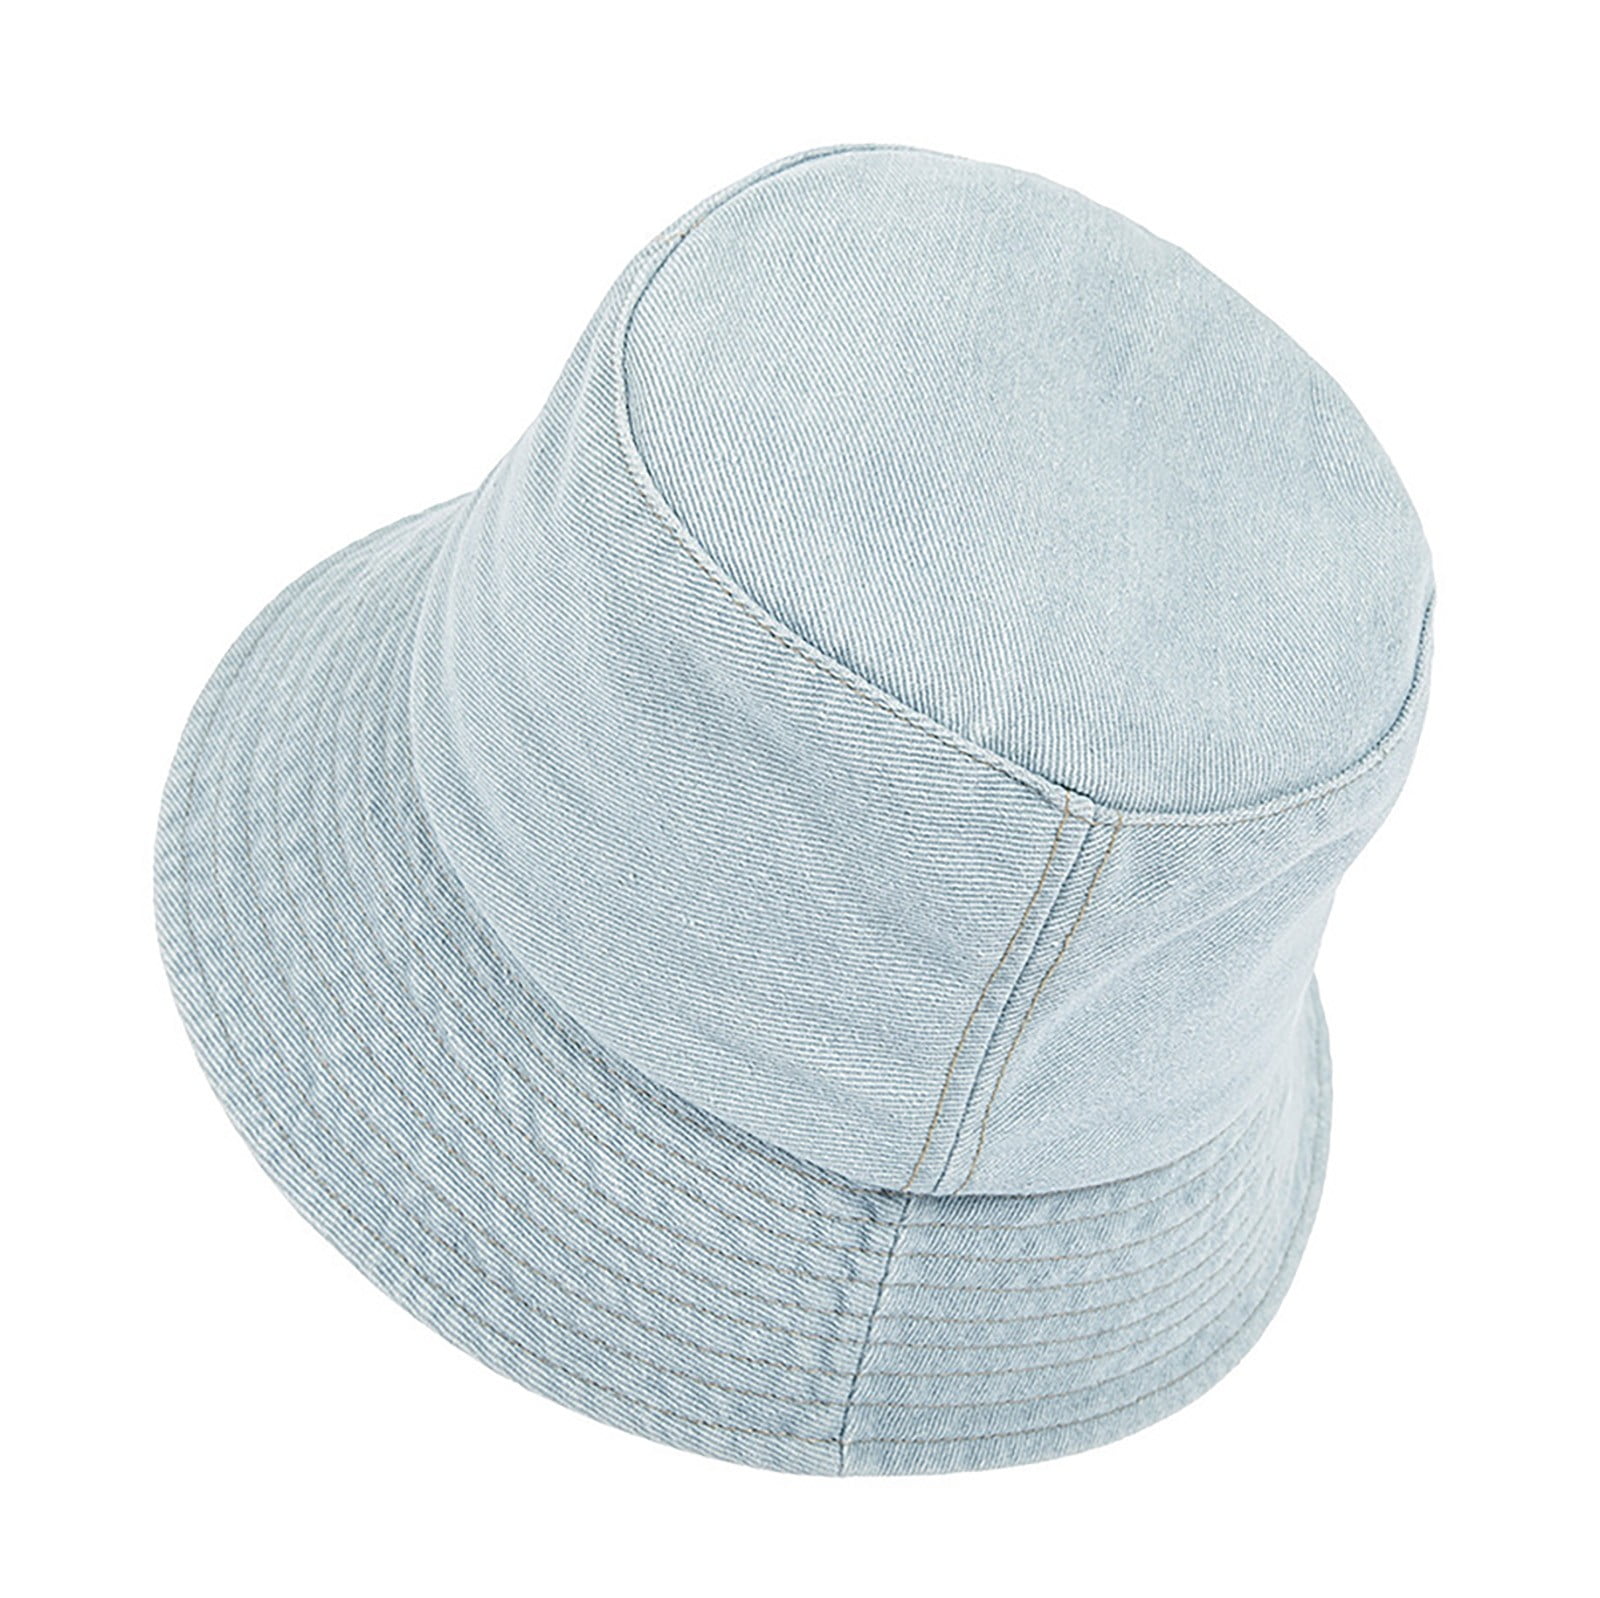 Bucket Hats for Women Travel Beach Sun Hat Outdoor Cap Unisex